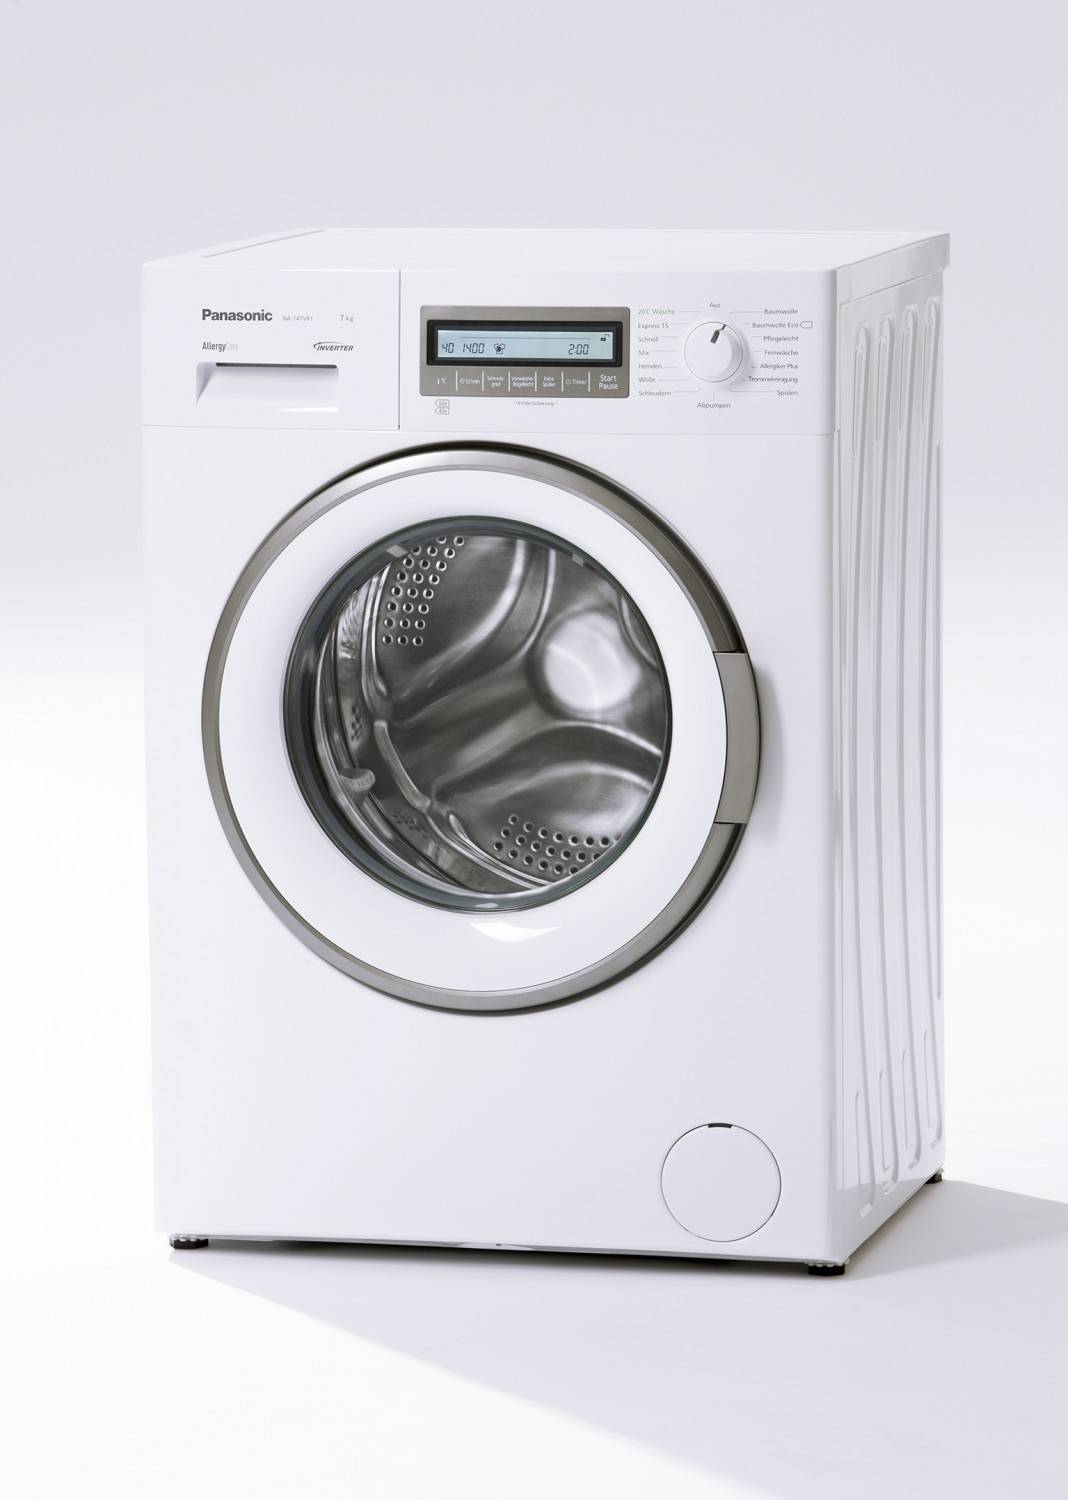 Haushaltsgroßgeräte Panasonic-Waschmaschine mit leisem Motor und Allergiker-Programm feiert Premiere - News, Bild 1